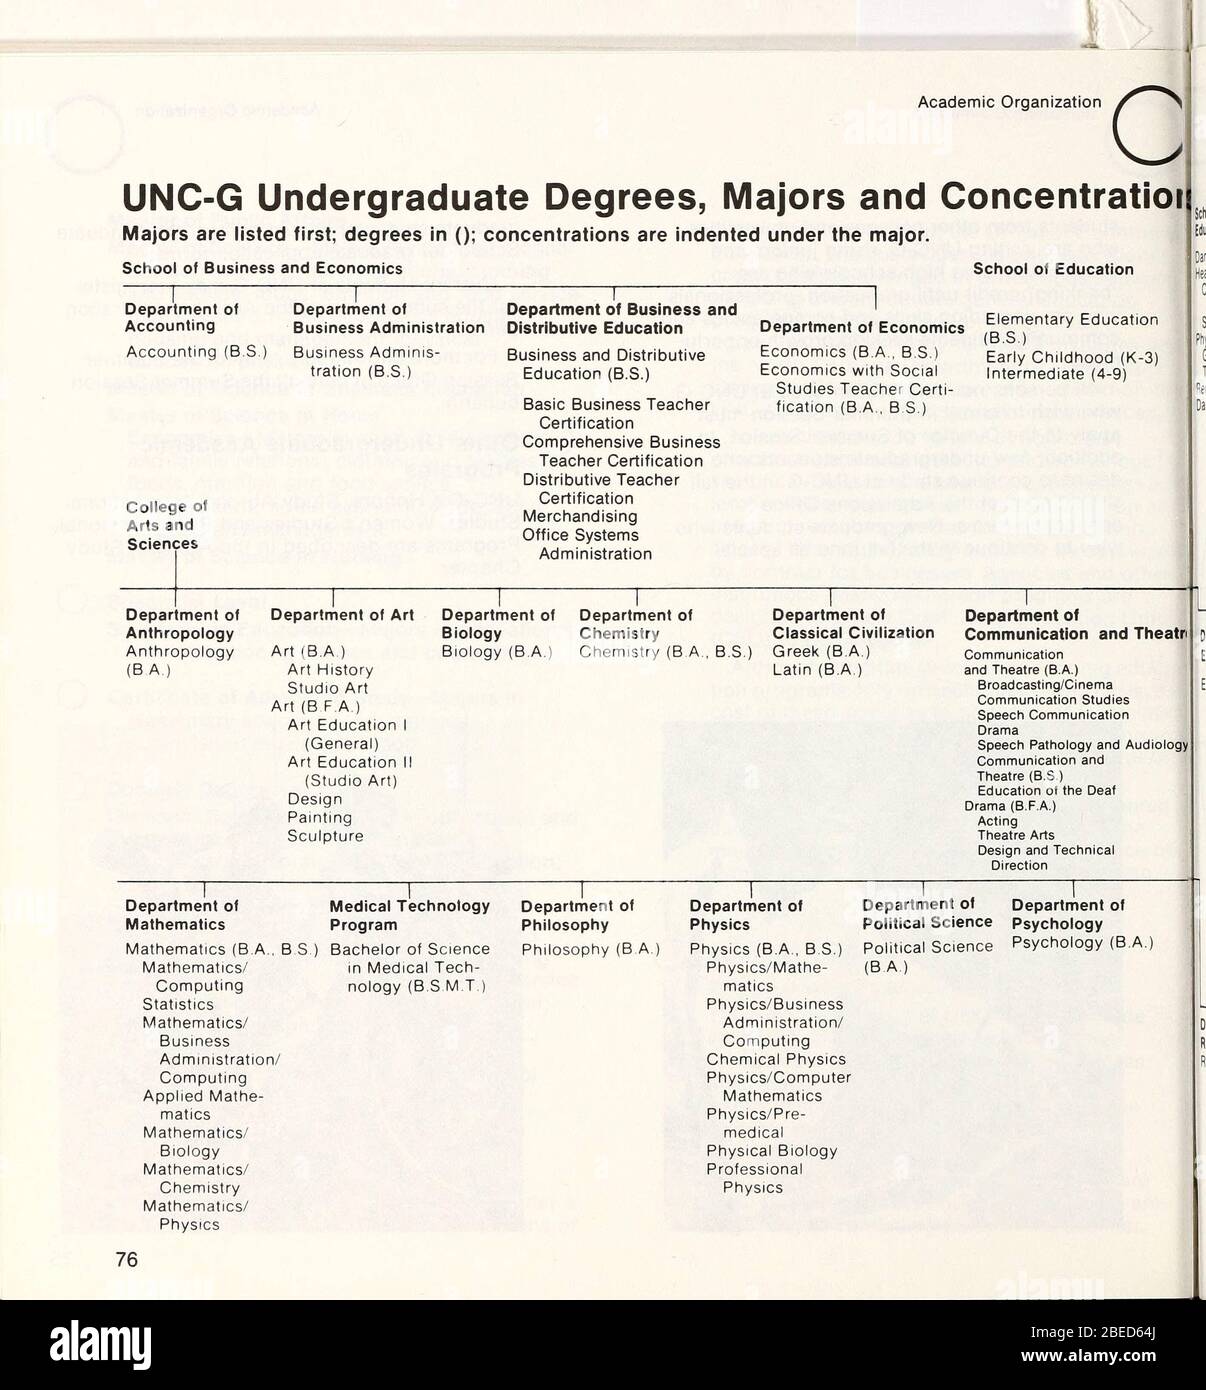 "Bollettino dell'Università del North Carolina a Greensboro [1979-1980]; 1979; 1980; ' Foto Stock